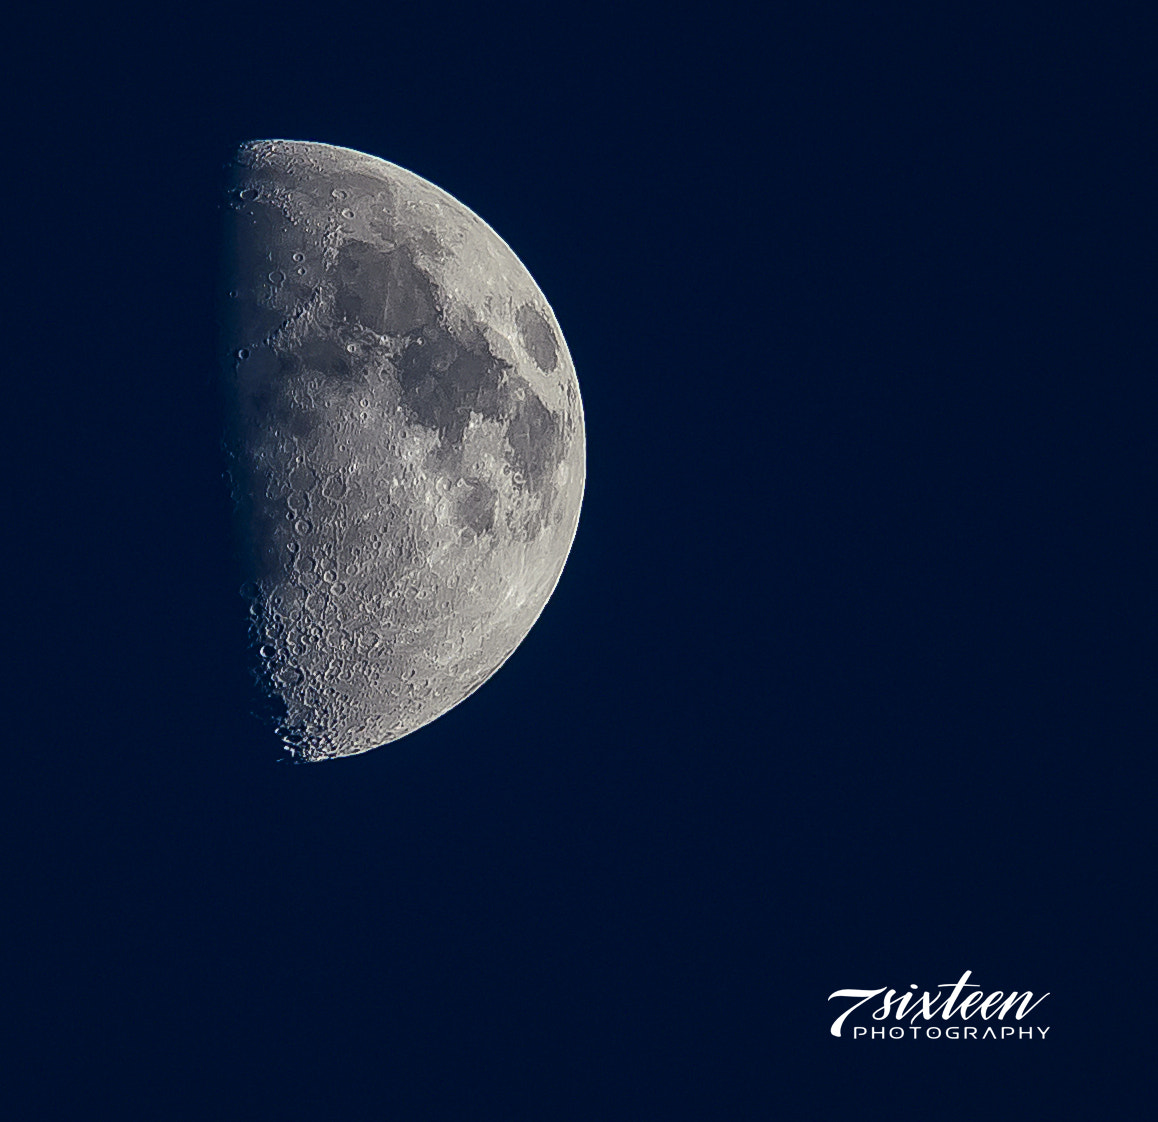 Nikon D500 + Nikon AF-S Nikkor 300mm F4D ED-IF sample photo. First quarter moon photography